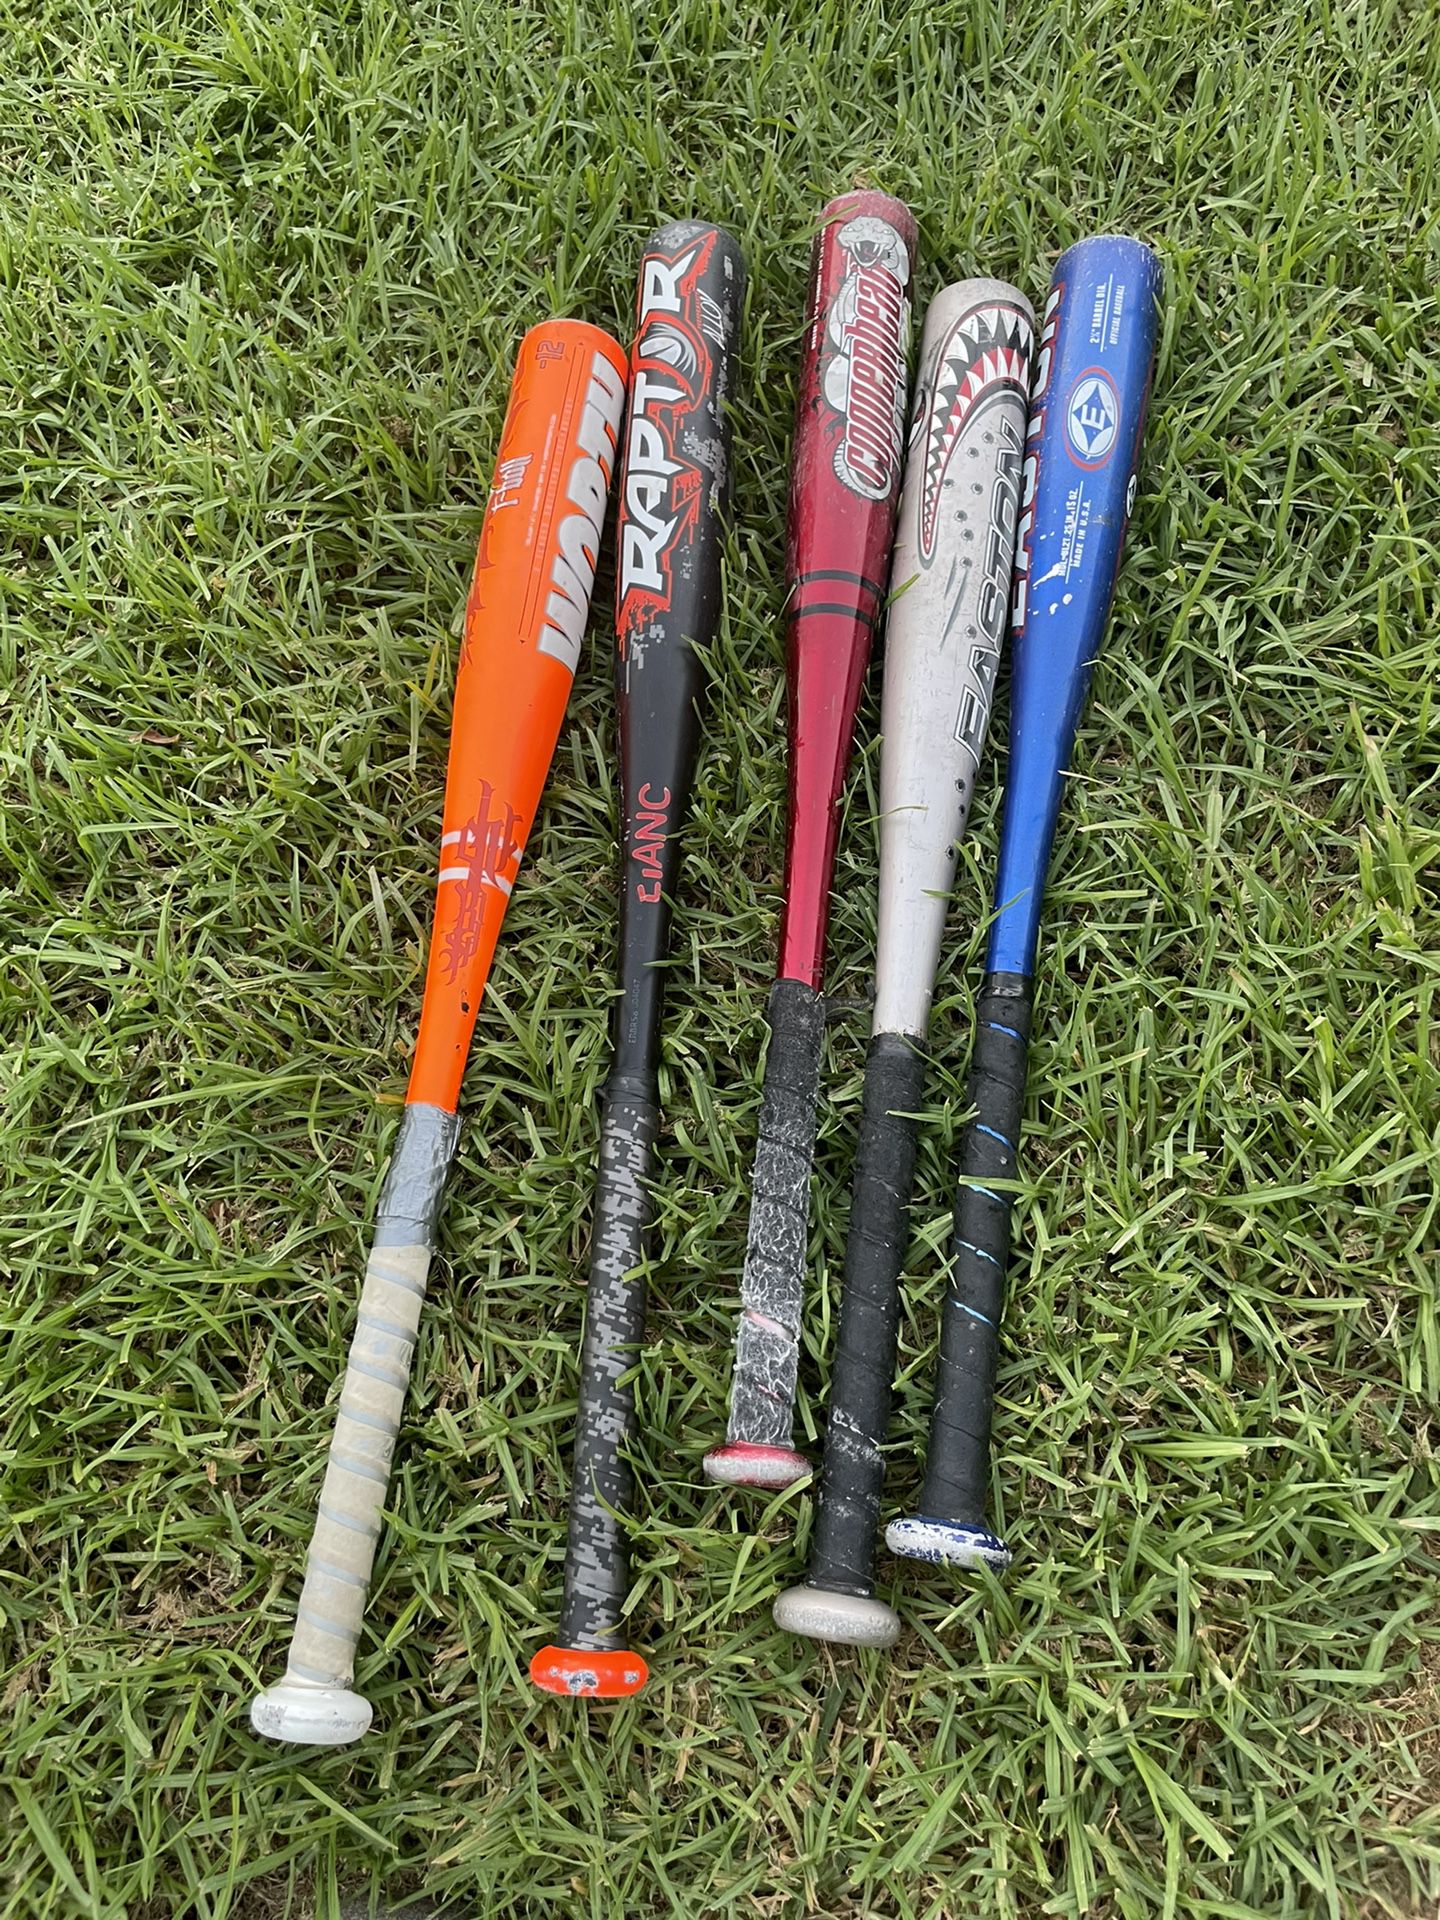 baseball ⚾️ bats 